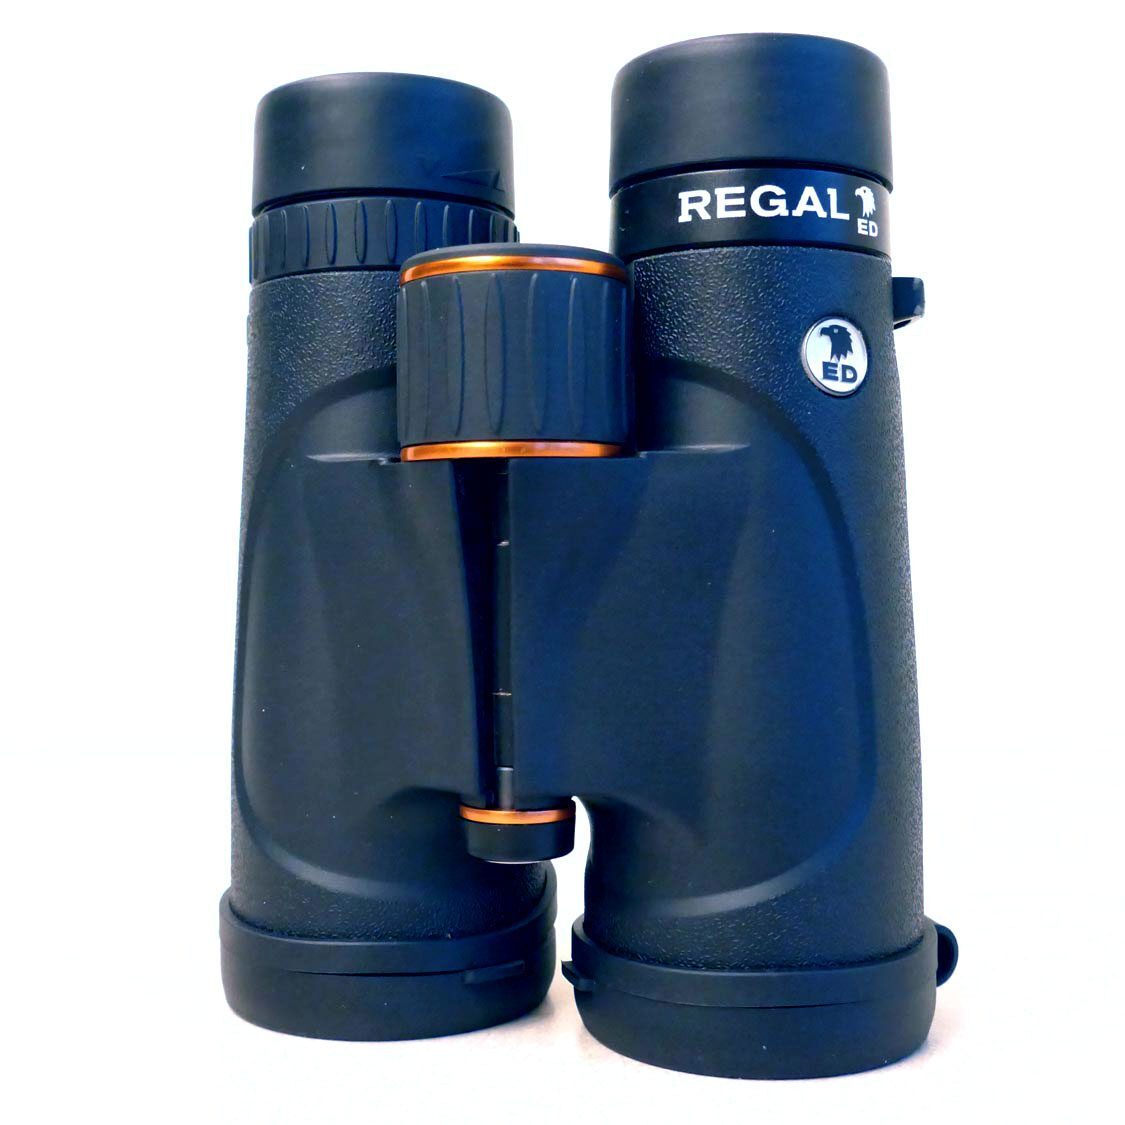 Celestron Regal ED 8x42 binoculars.